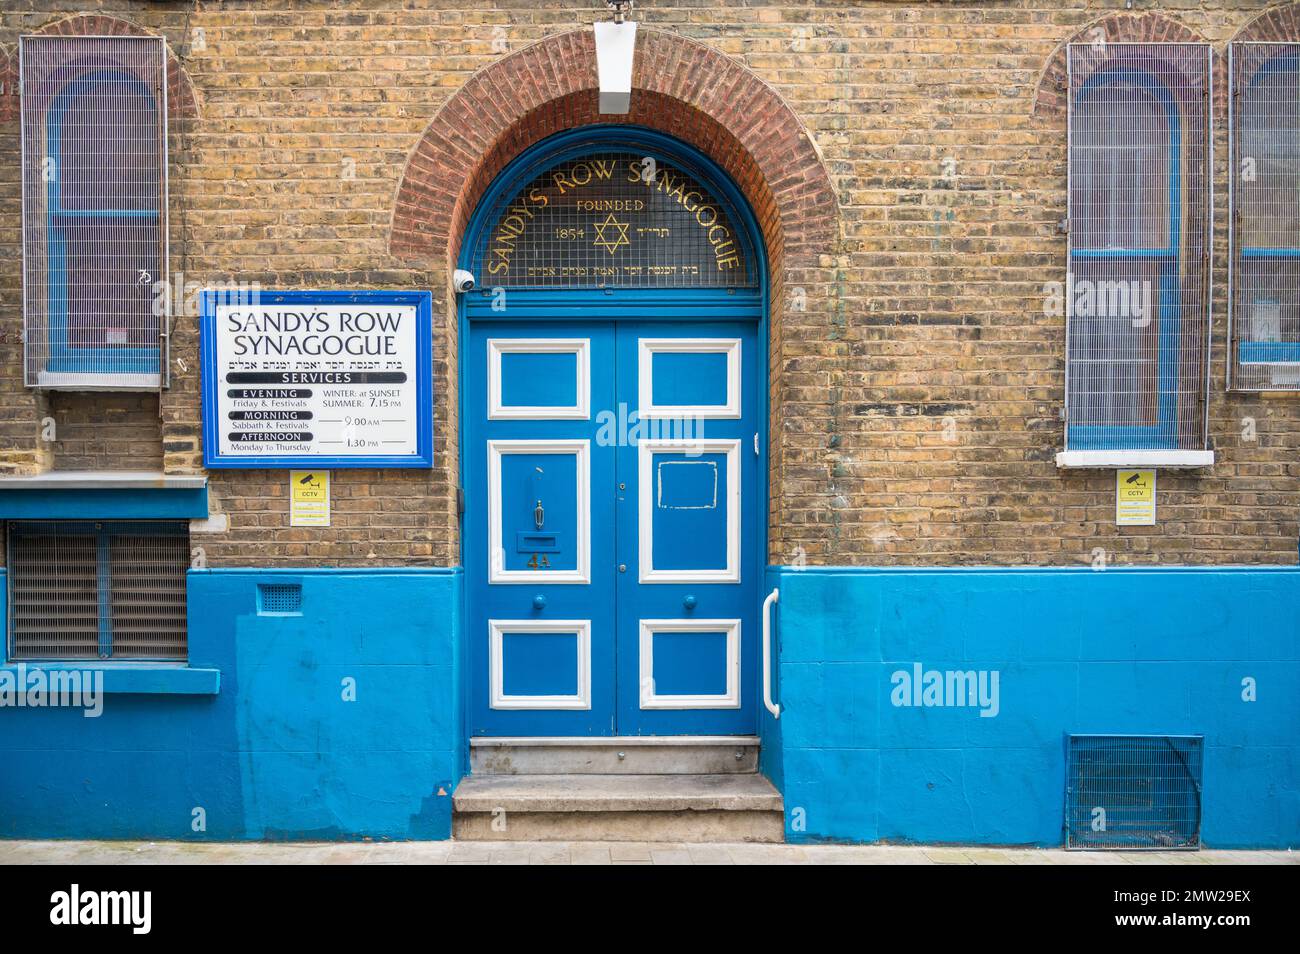 Ingresso alla sinagoga di Sandy's Row, una storica sinagoga Ashkenazi in un edificio classificato di livello ll a Sandy's Row, Spitalfields, Londra, Inghilterra, Regno Unito Foto Stock